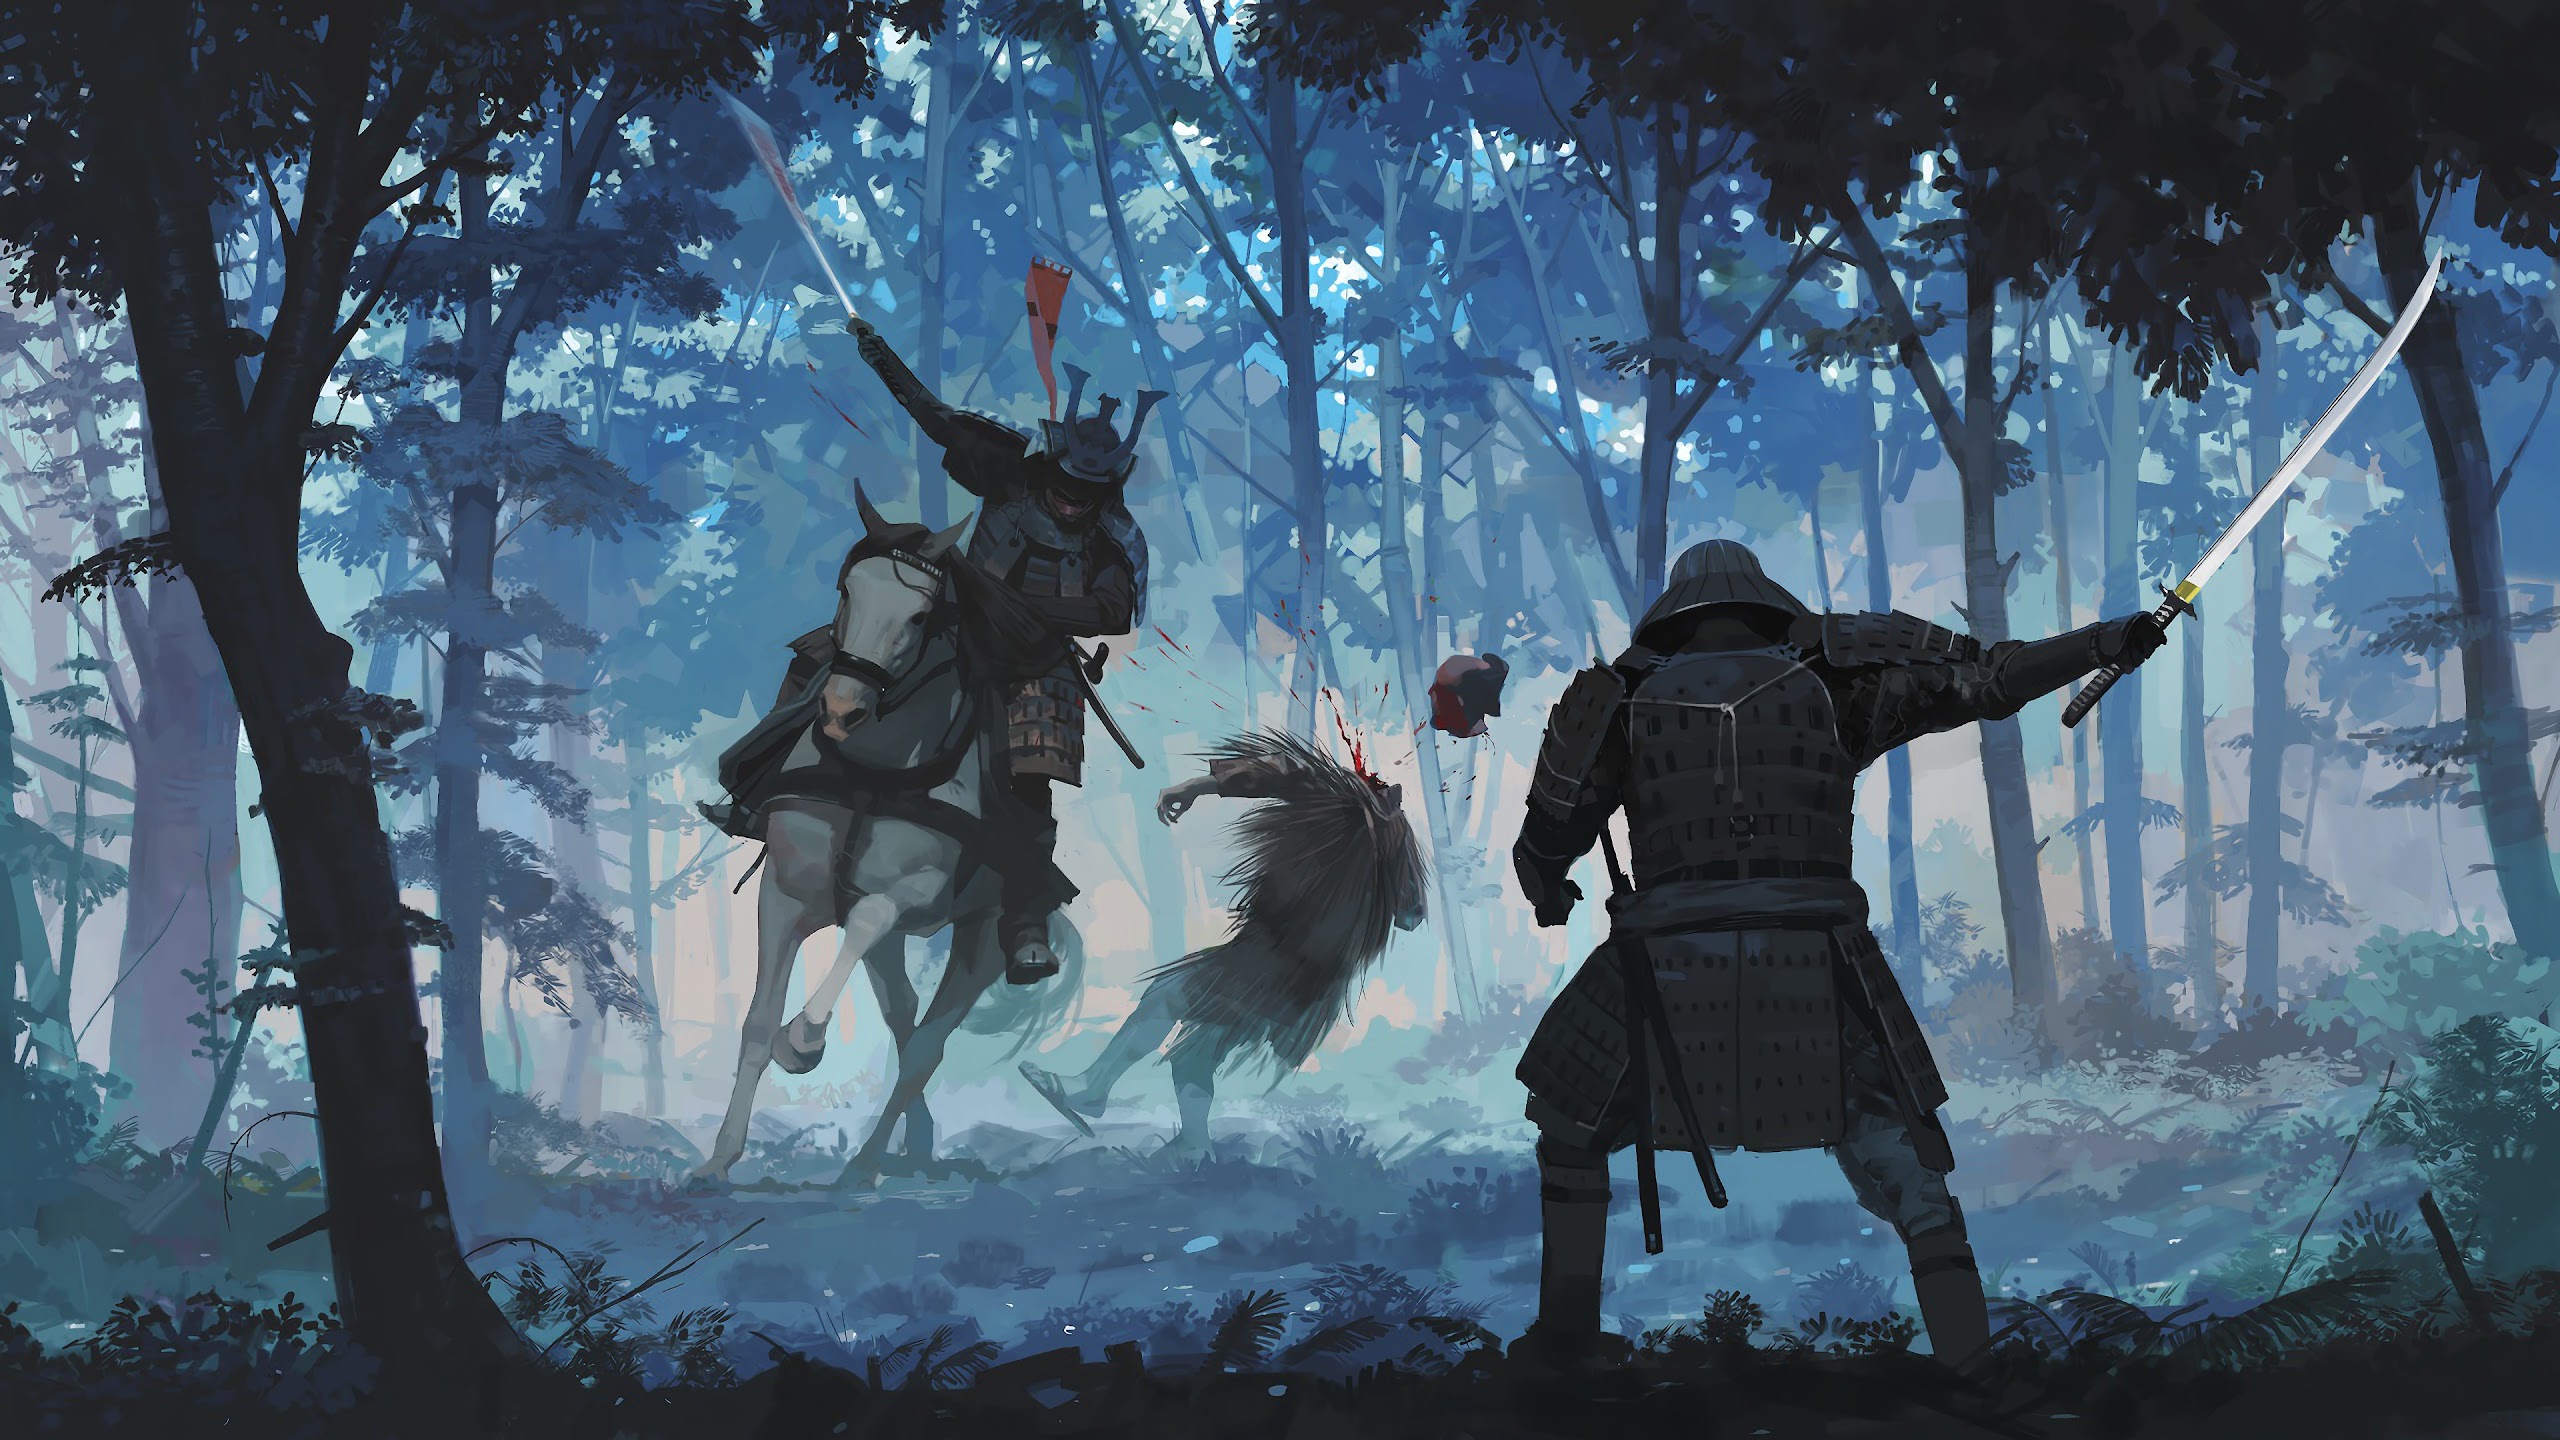 General 2560x1440 artwork fantasy art samurai